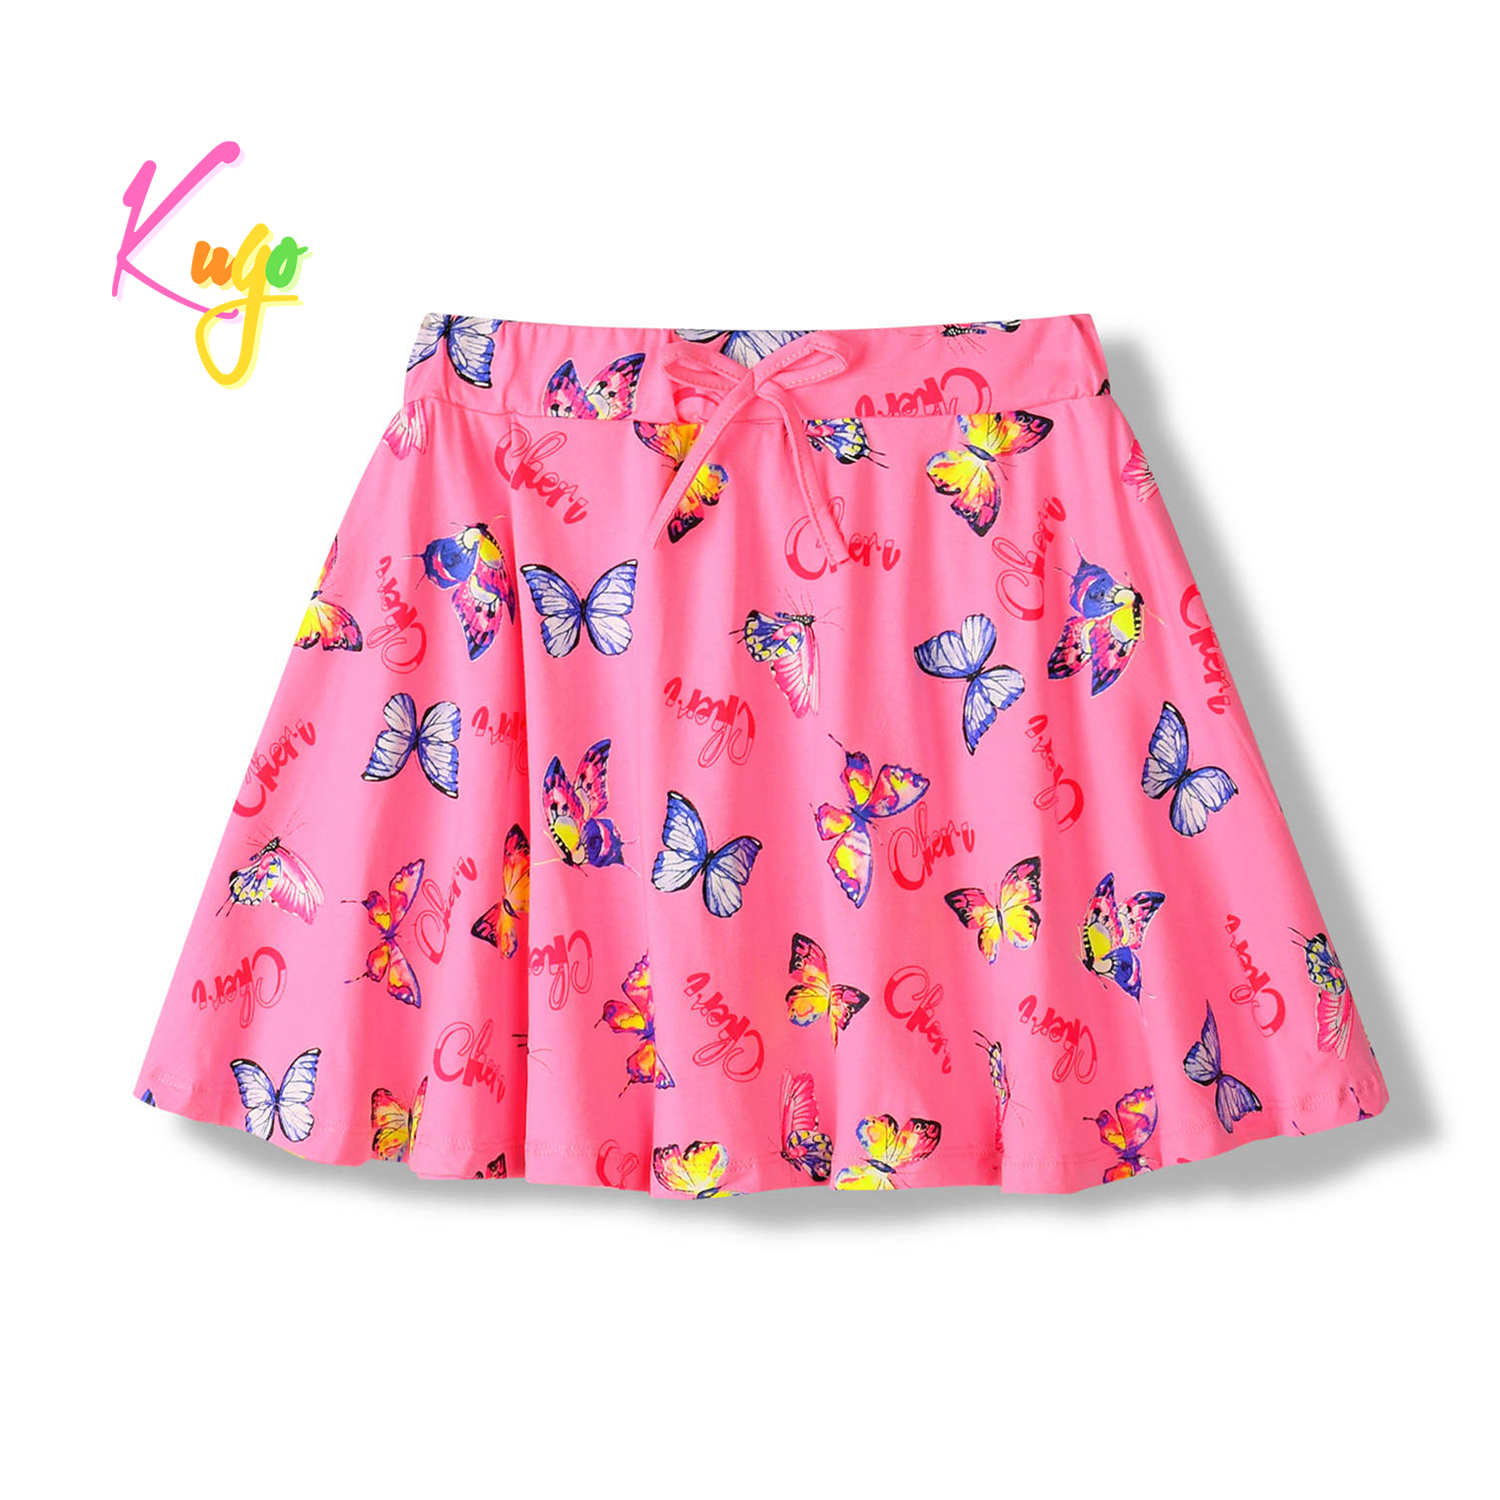 Dívčí sukně - KUGO HS9283, sytě růžová Barva: Růžová, Velikost: 146